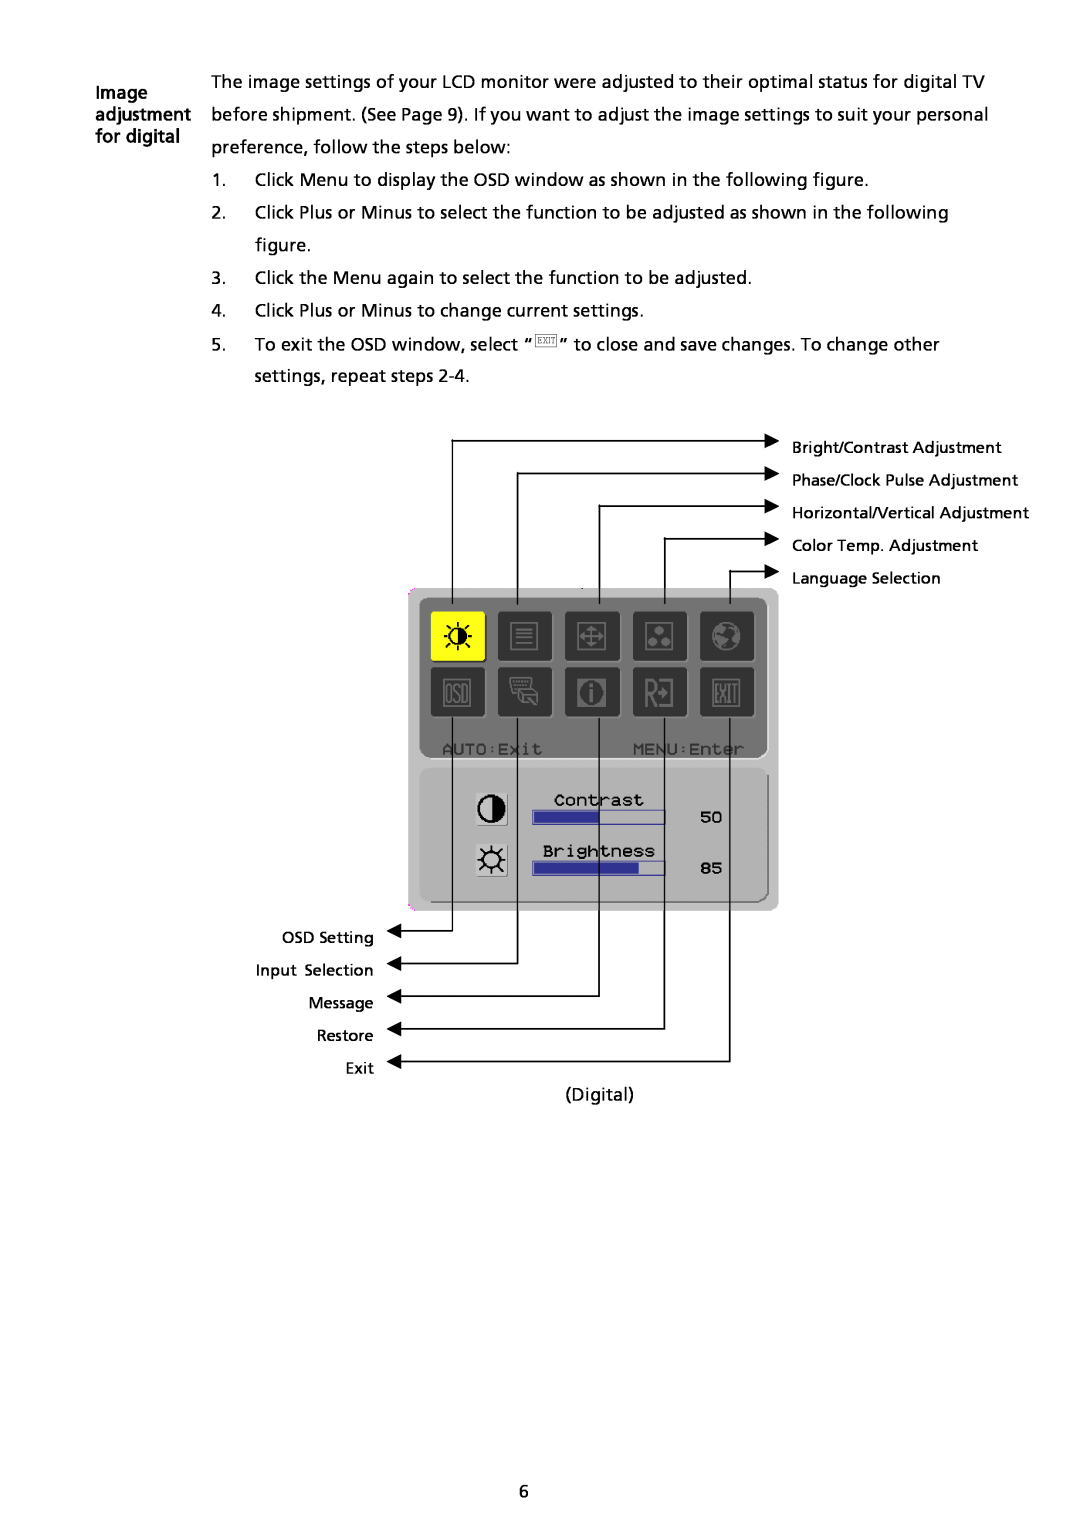 Acer AL2017 installation instructions Image adjustment for digital 